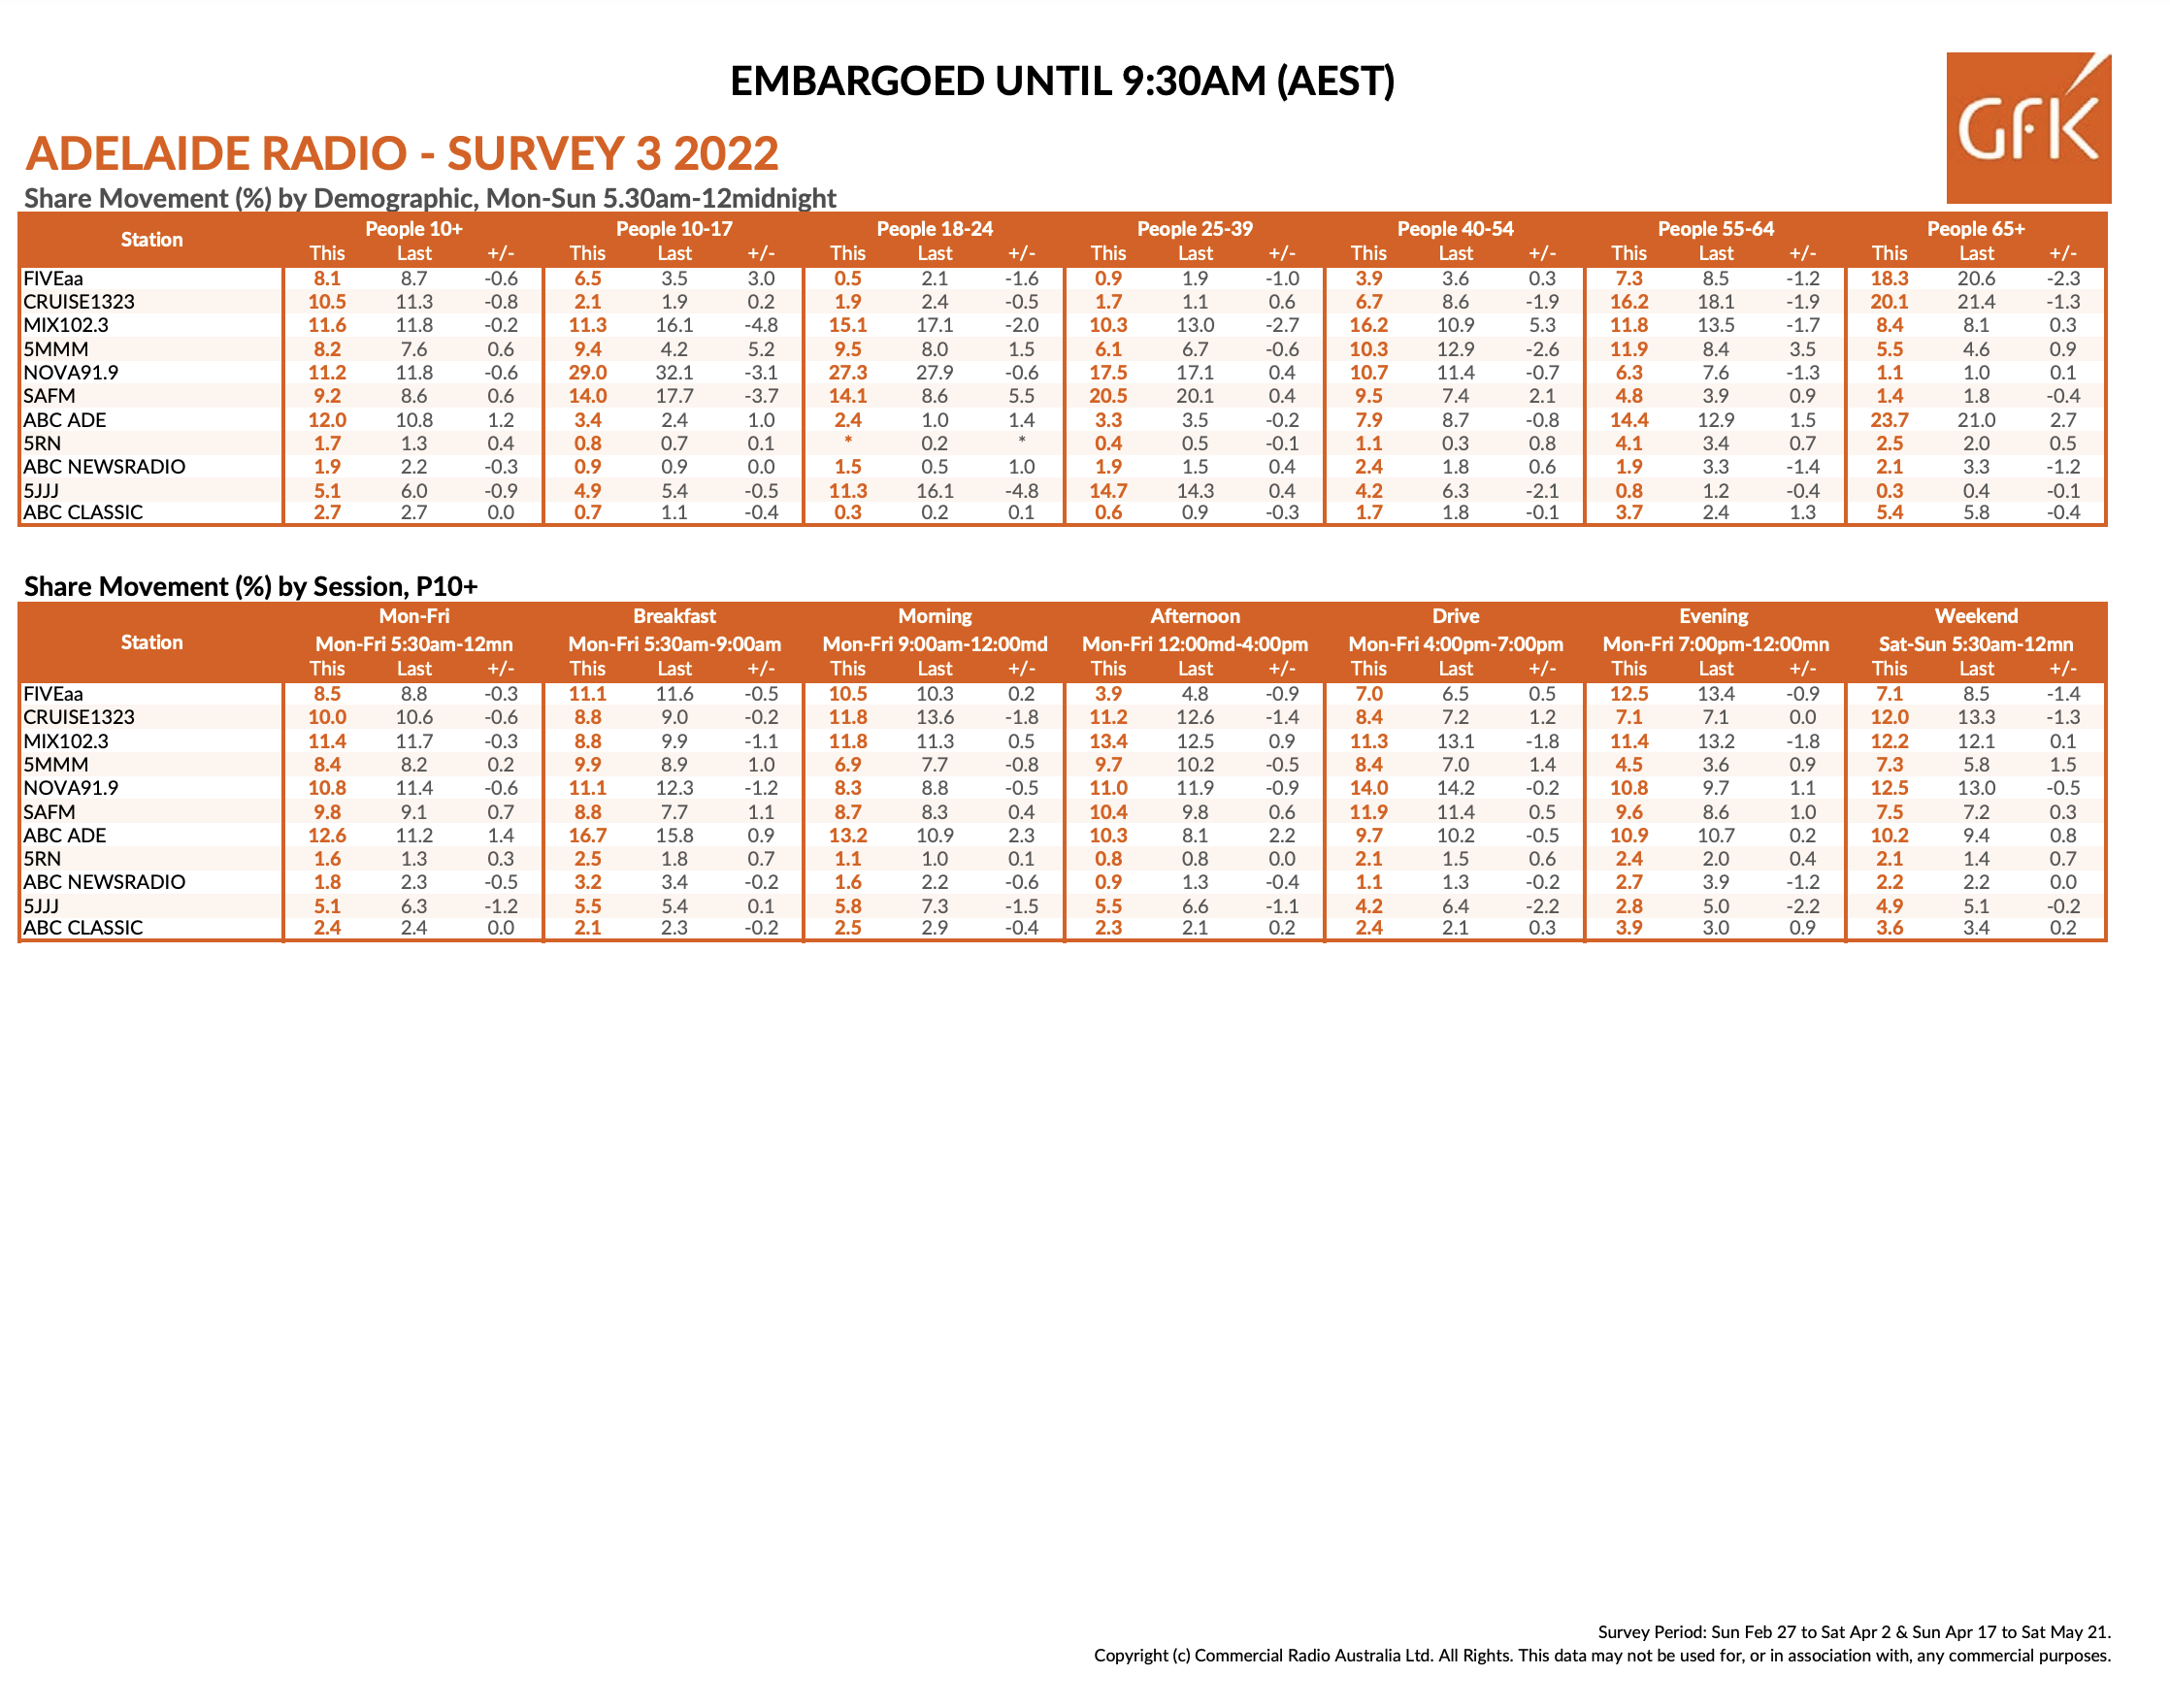 Adelaide radio ratings winners Survey 3 2022